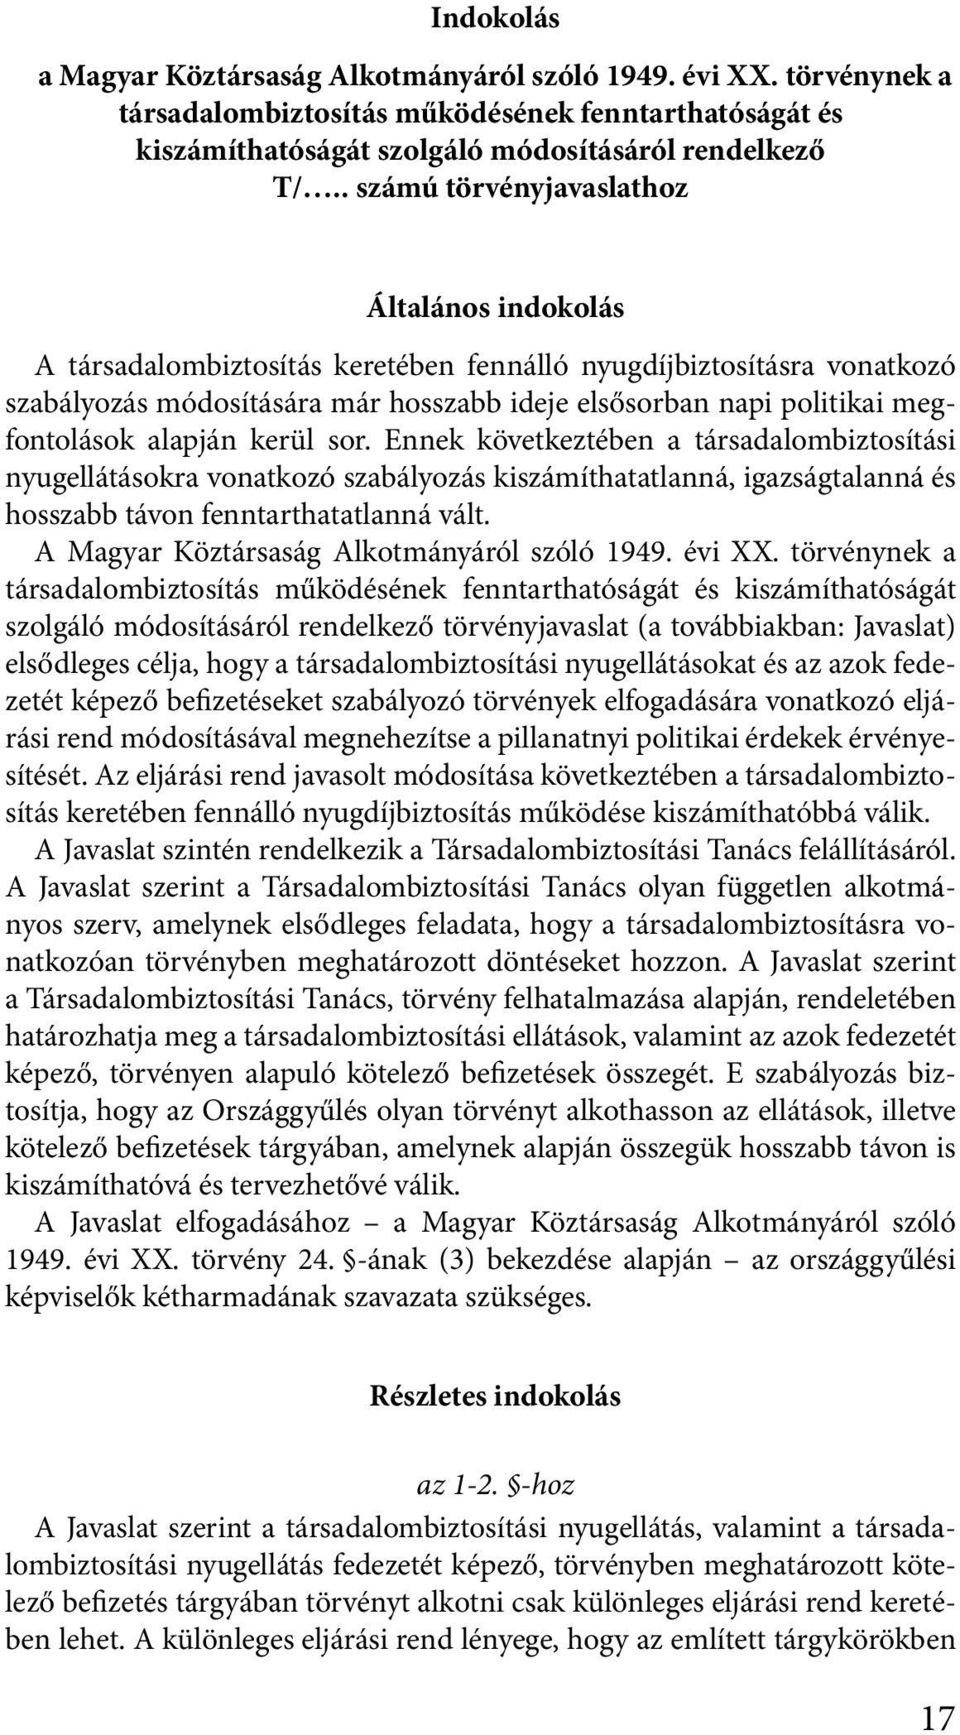 kerül sor. Ennek kövekezében a ársadalombizosíási nyugelláásokra vonakozó szabályozás kiszámíhaalanná, igazságalanná és hosszabb ávon fennarhaalanná vál. A Magyar Közársaság Alkományáról szóló 1949.